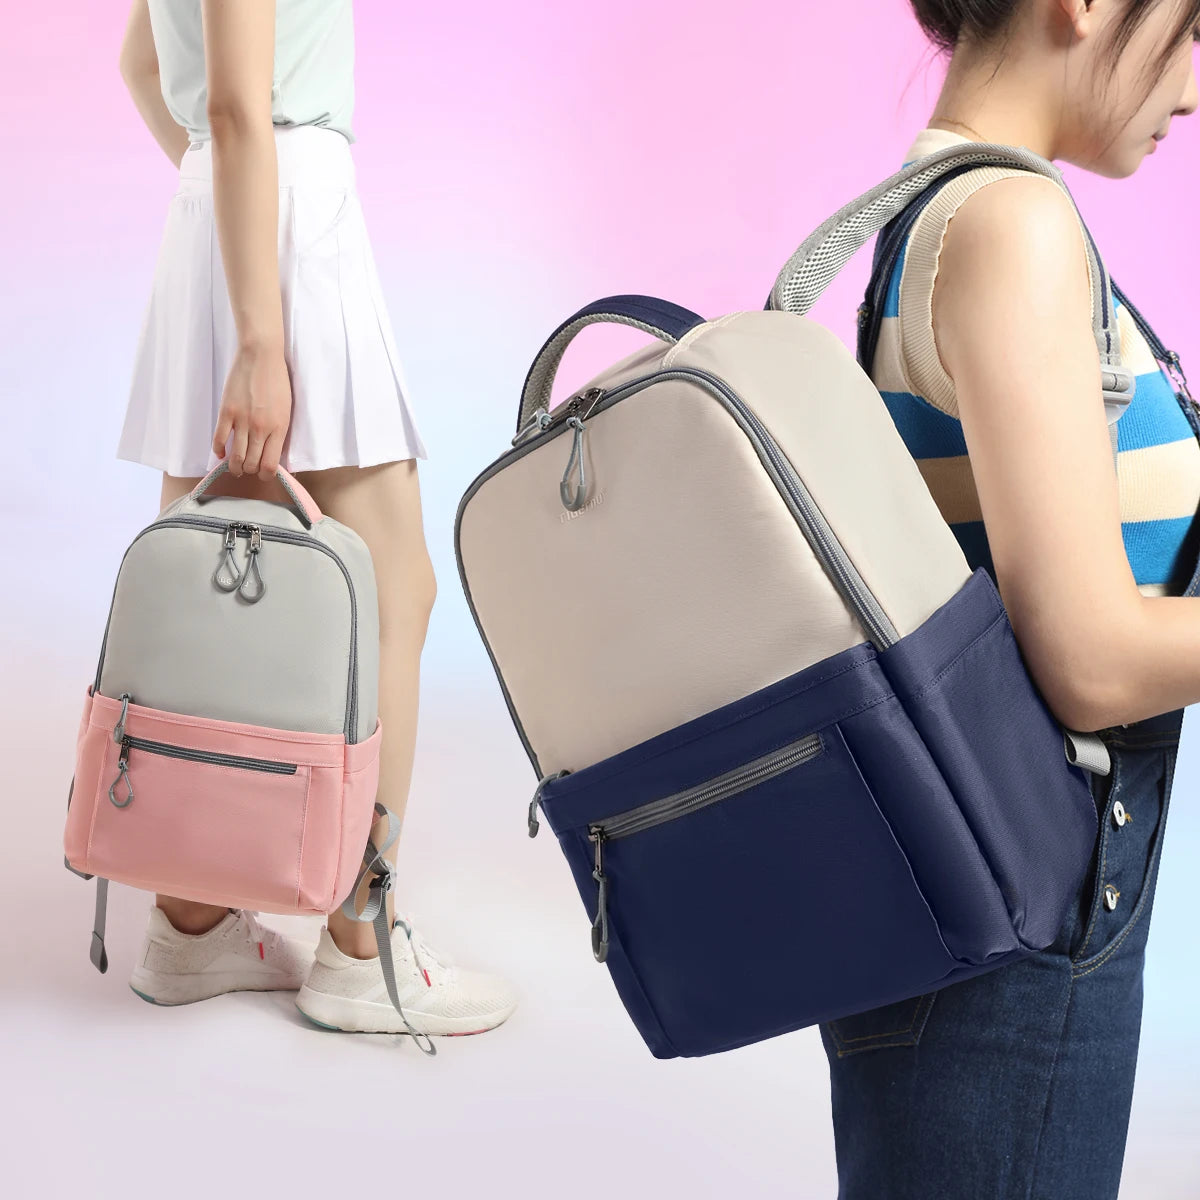 Lifetime Warranty Women Backpack 14-15.6inch Laptop Backpack School Bag